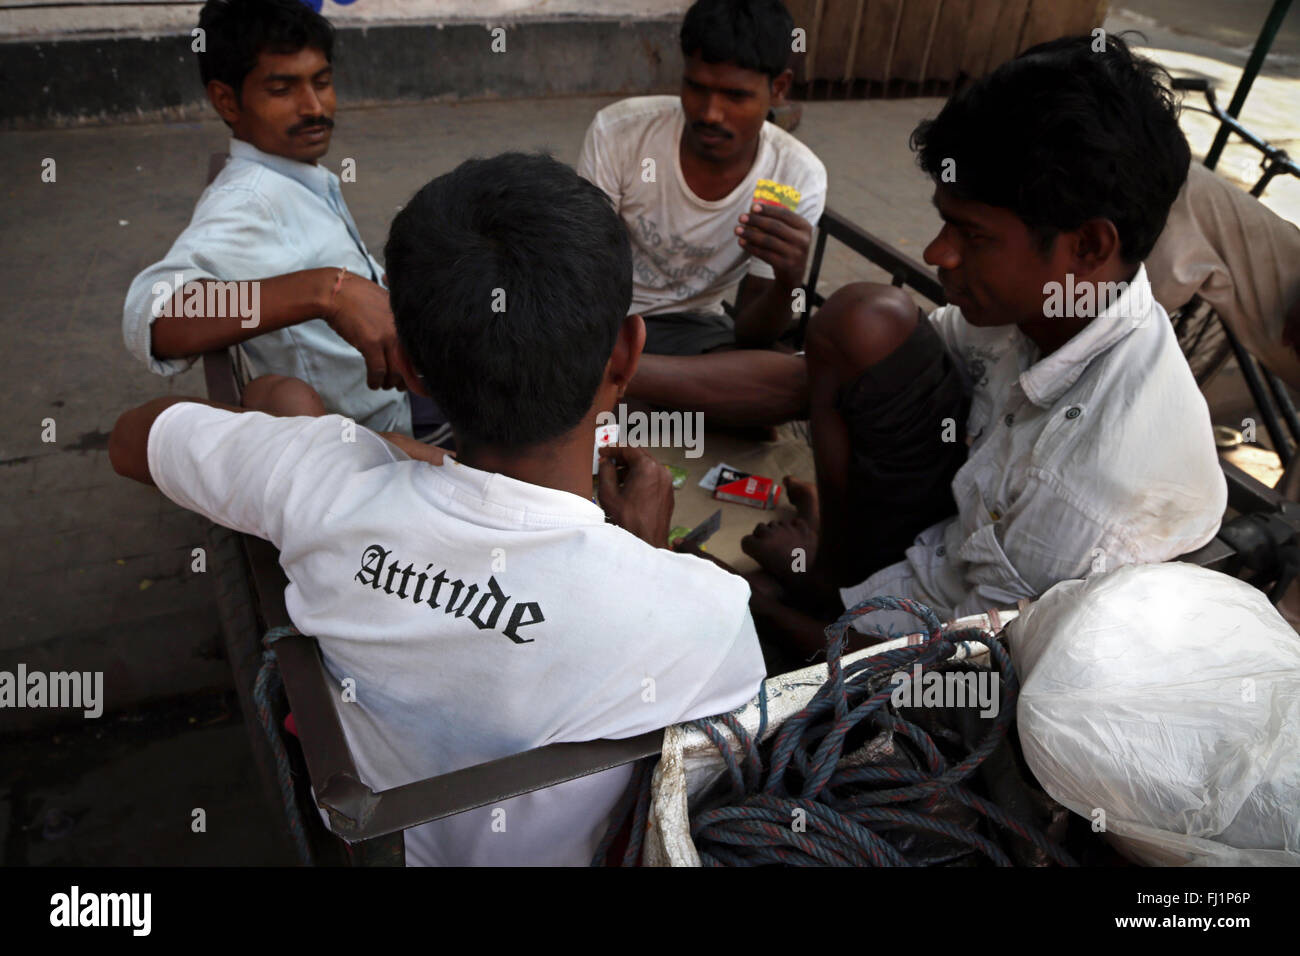 Los hombres jugando a las cartas en Kolkata, uno de ellos lleva la 'actitud' camiseta Foto de stock